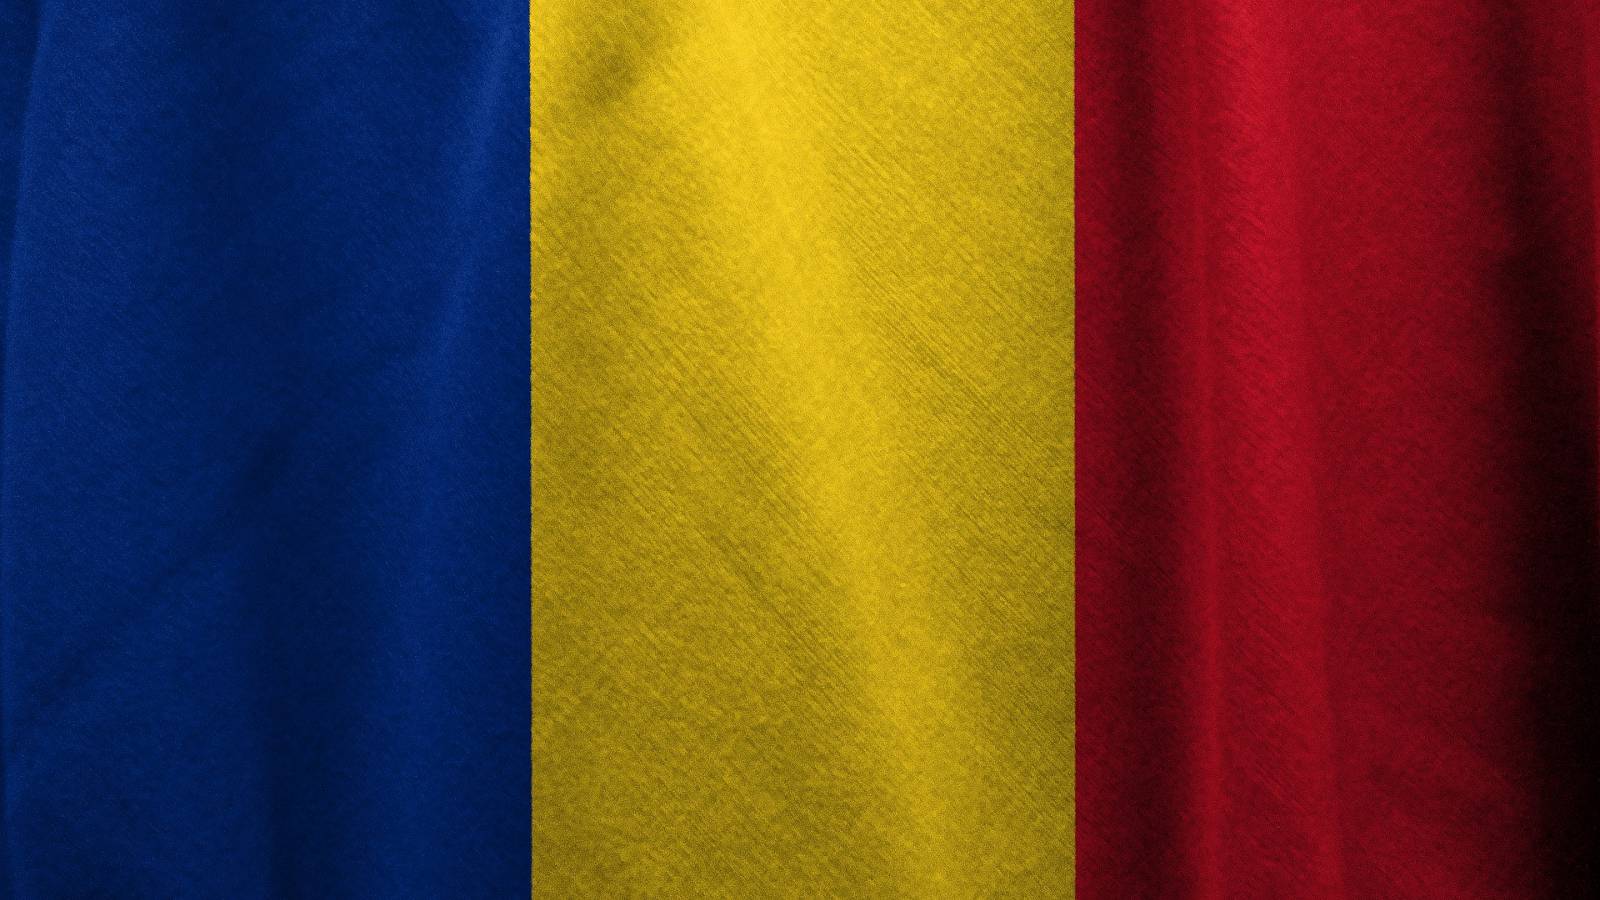 Wskaźniki zachorowalności w Rumunii nadal rosną 14 stycznia 2022 r